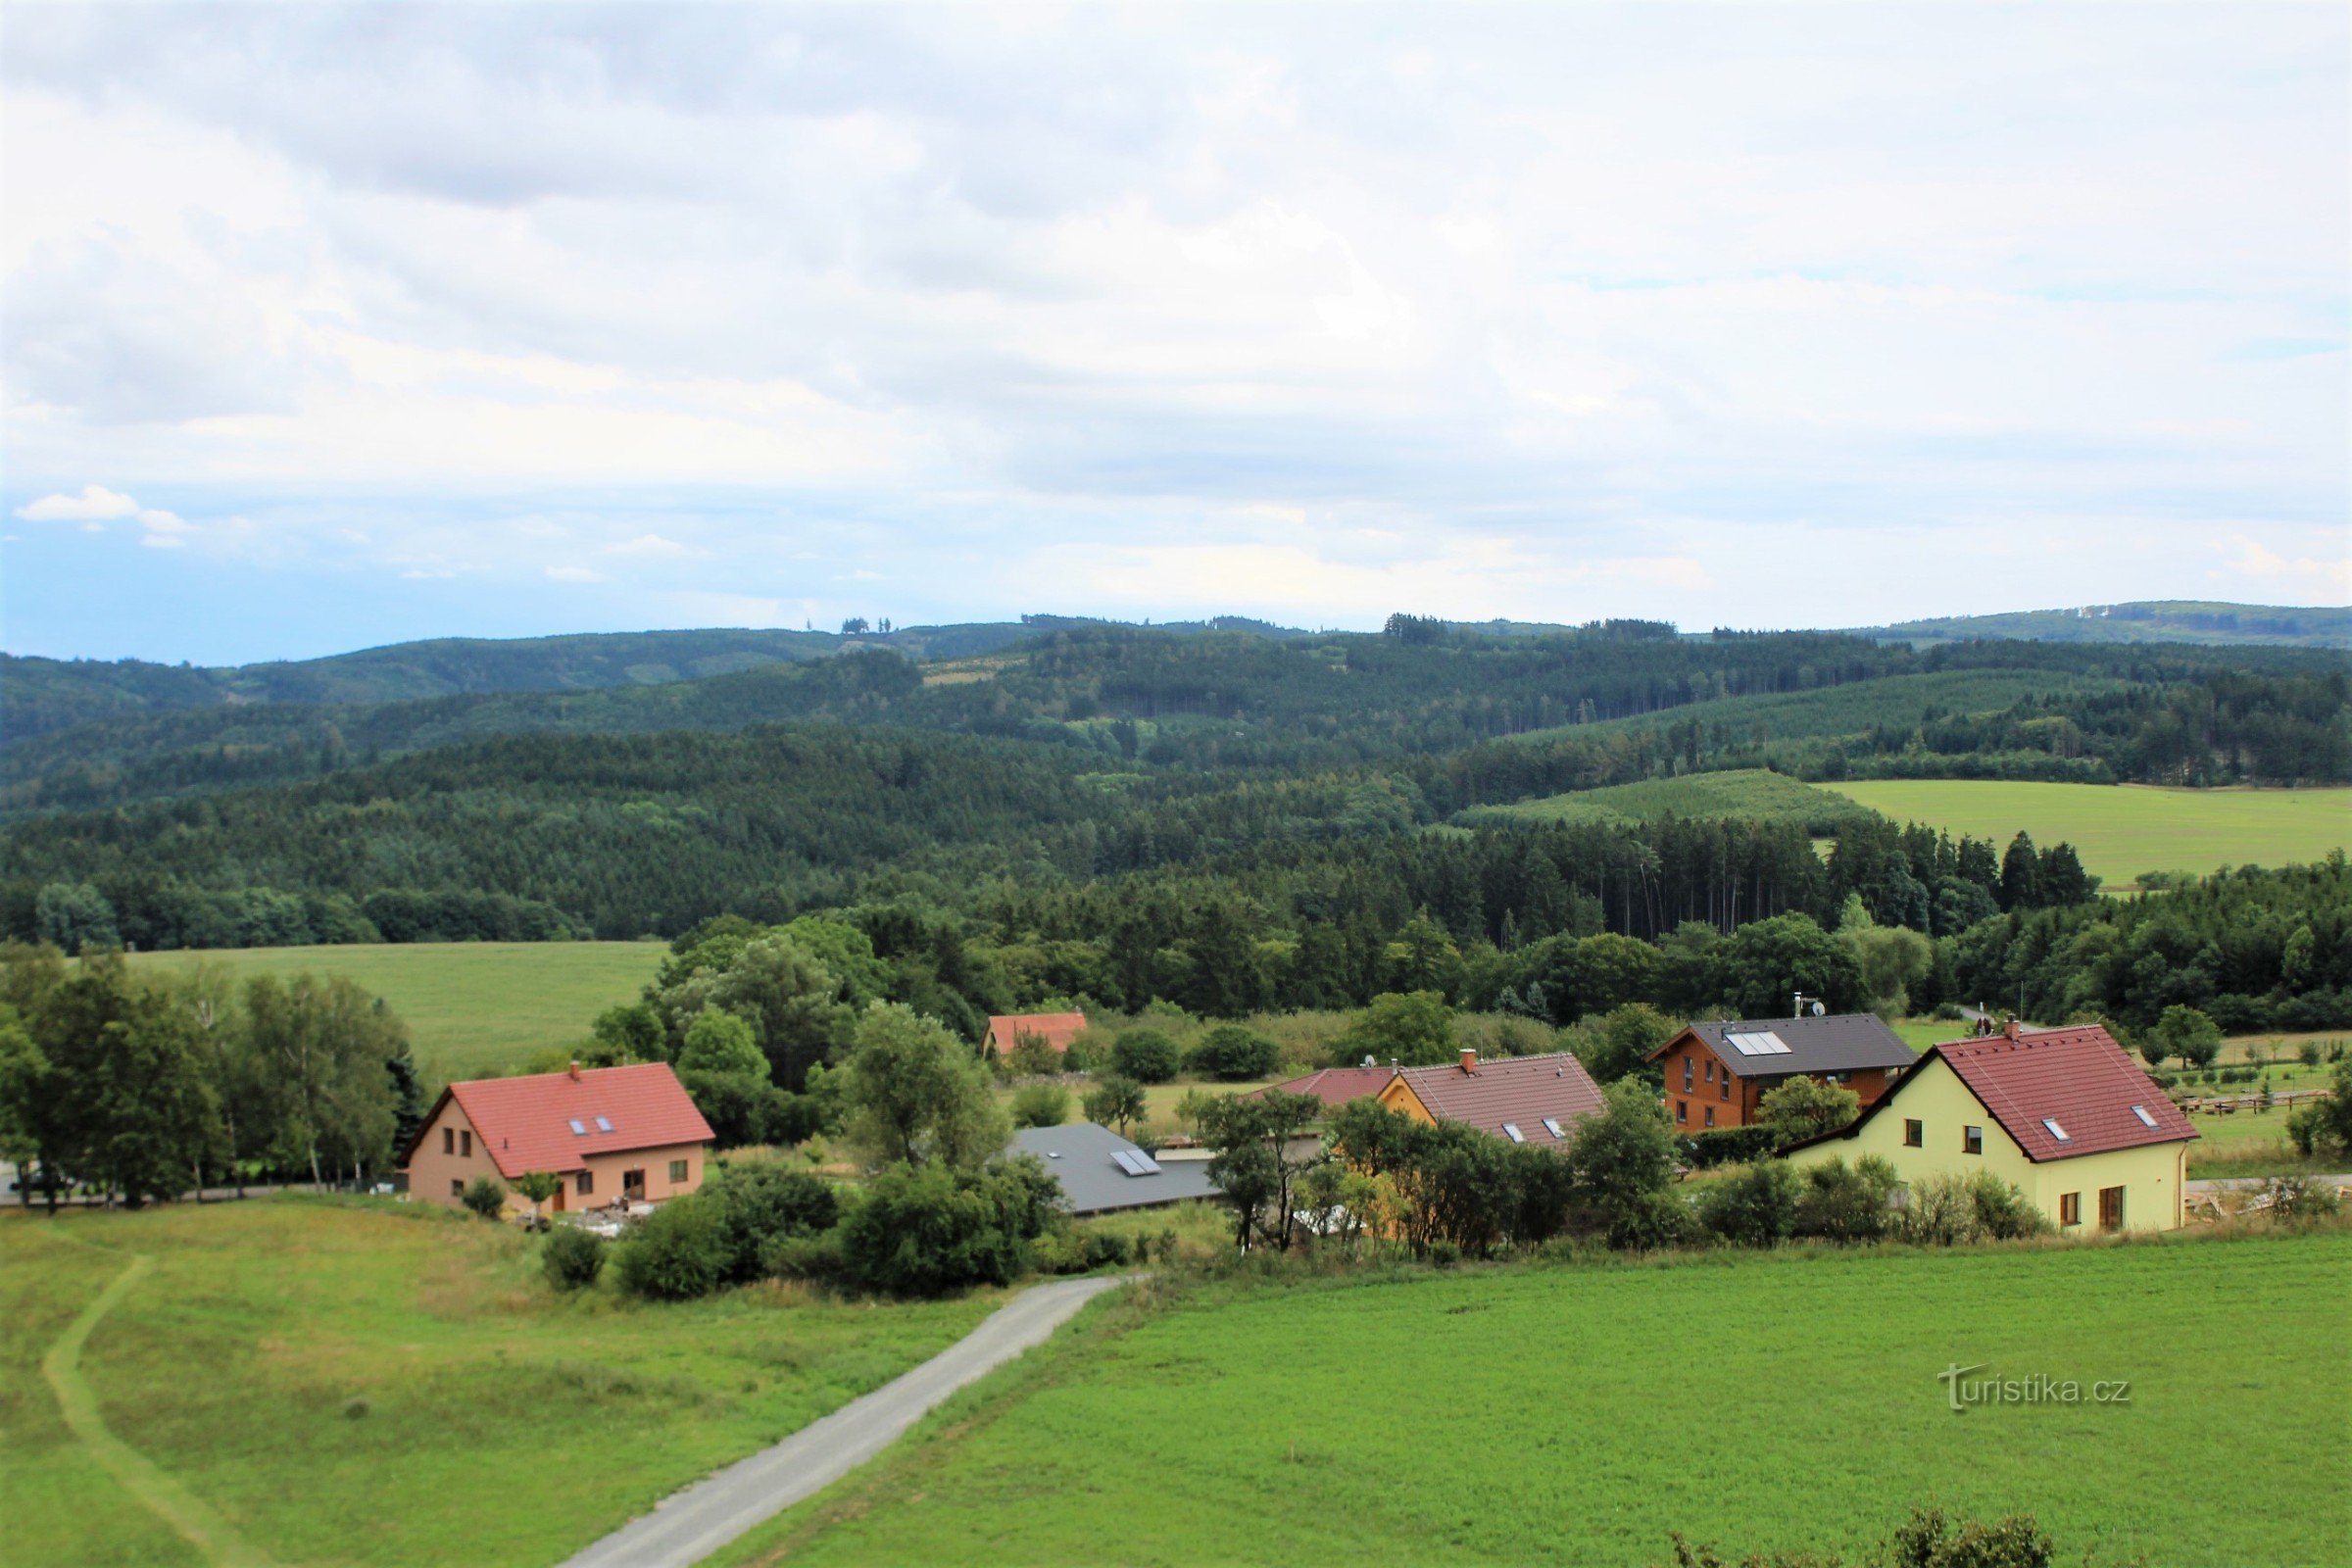 从村庄上部的观景塔向 Hořický hřbet 眺望